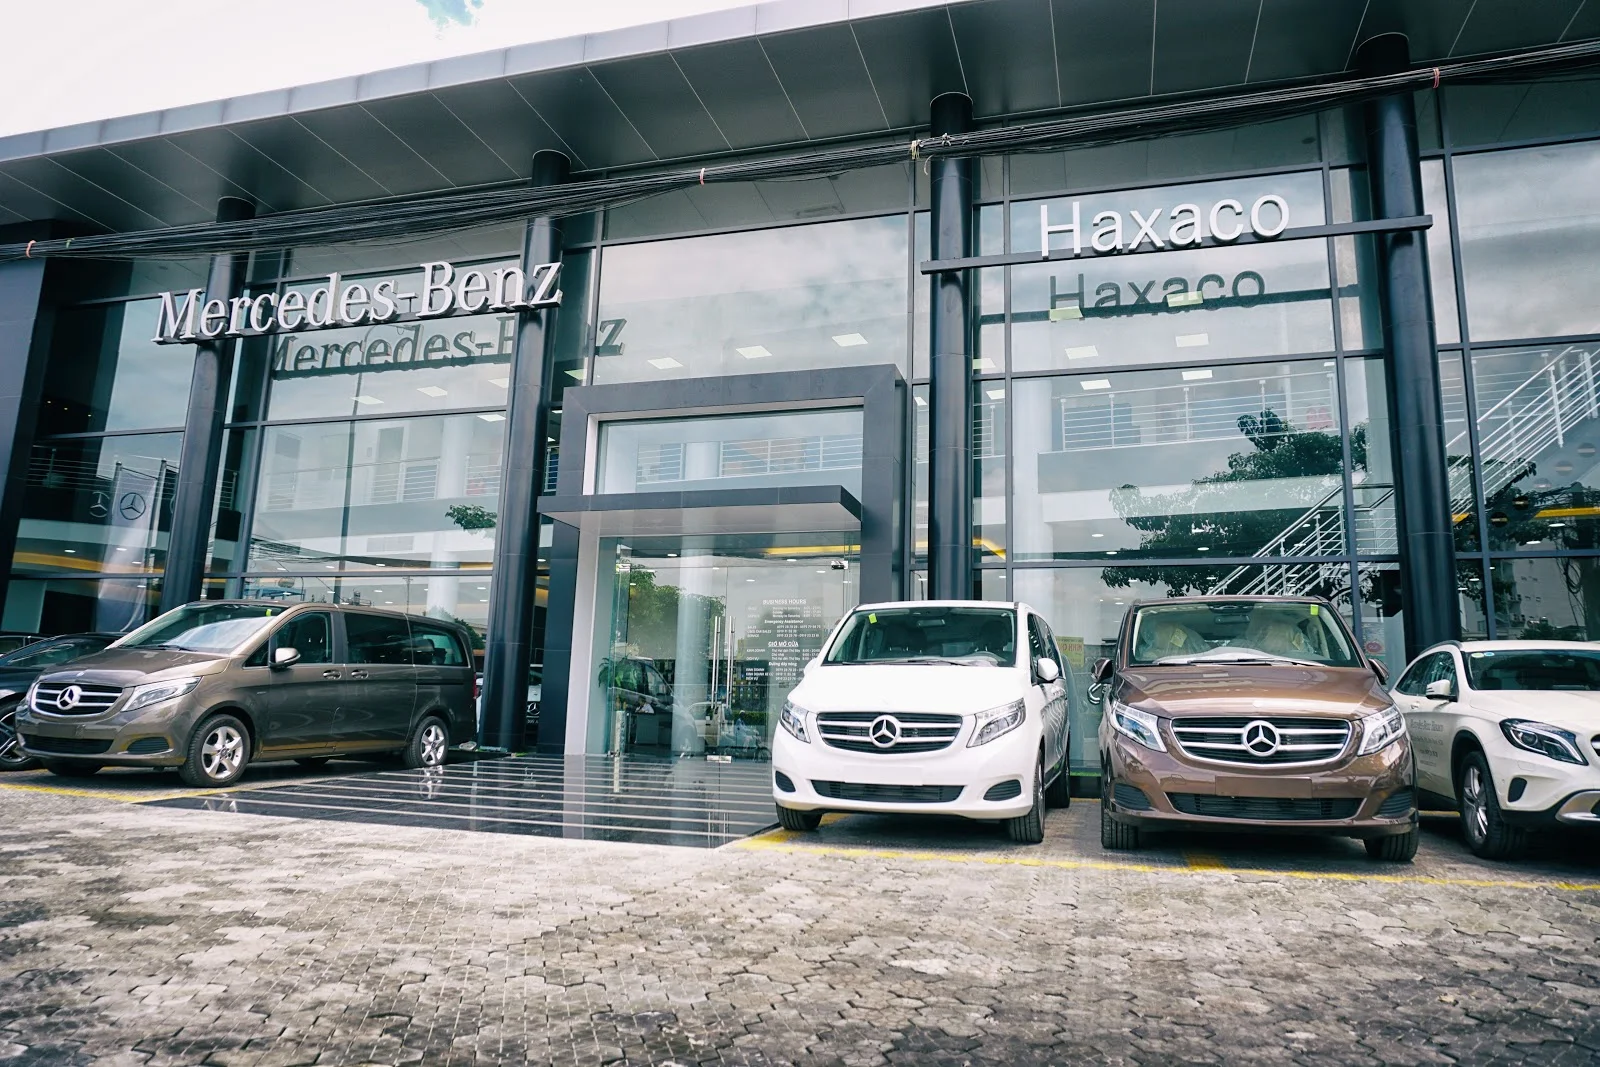 Mercedes Benz Haxaco là một trong hai đại lý Mercedes lớn nhất và uy tín nhất hiện nay